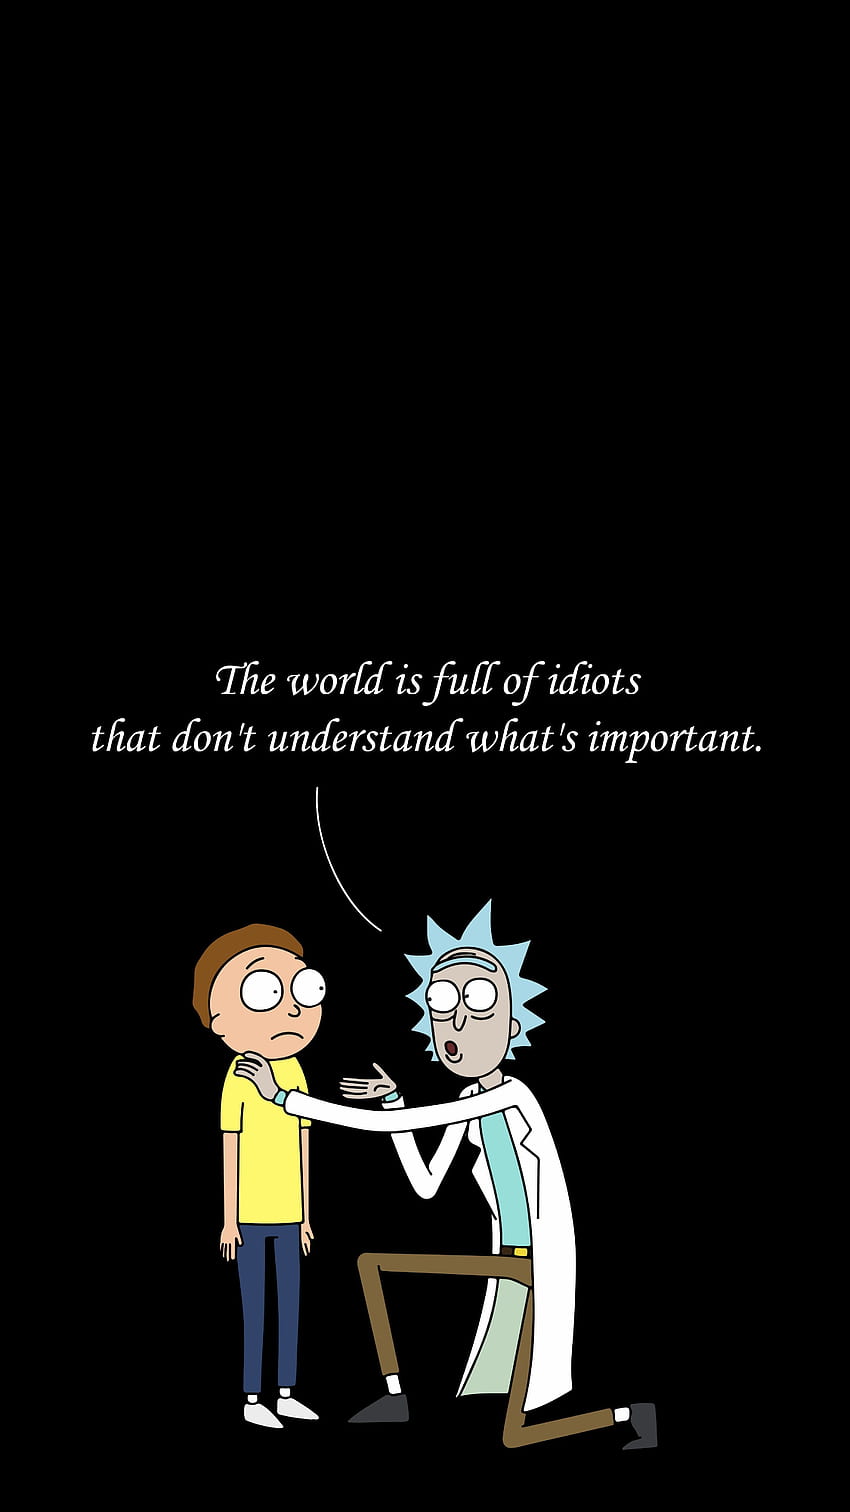 Với điện thoại Rick và Morty trực tiếp, bạn cảm thấy như mình đang sống trong thế giới của Rick và Morty. Hãy tận hưởng cảm giác này khi bạn sử dụng điện thoại của mình.